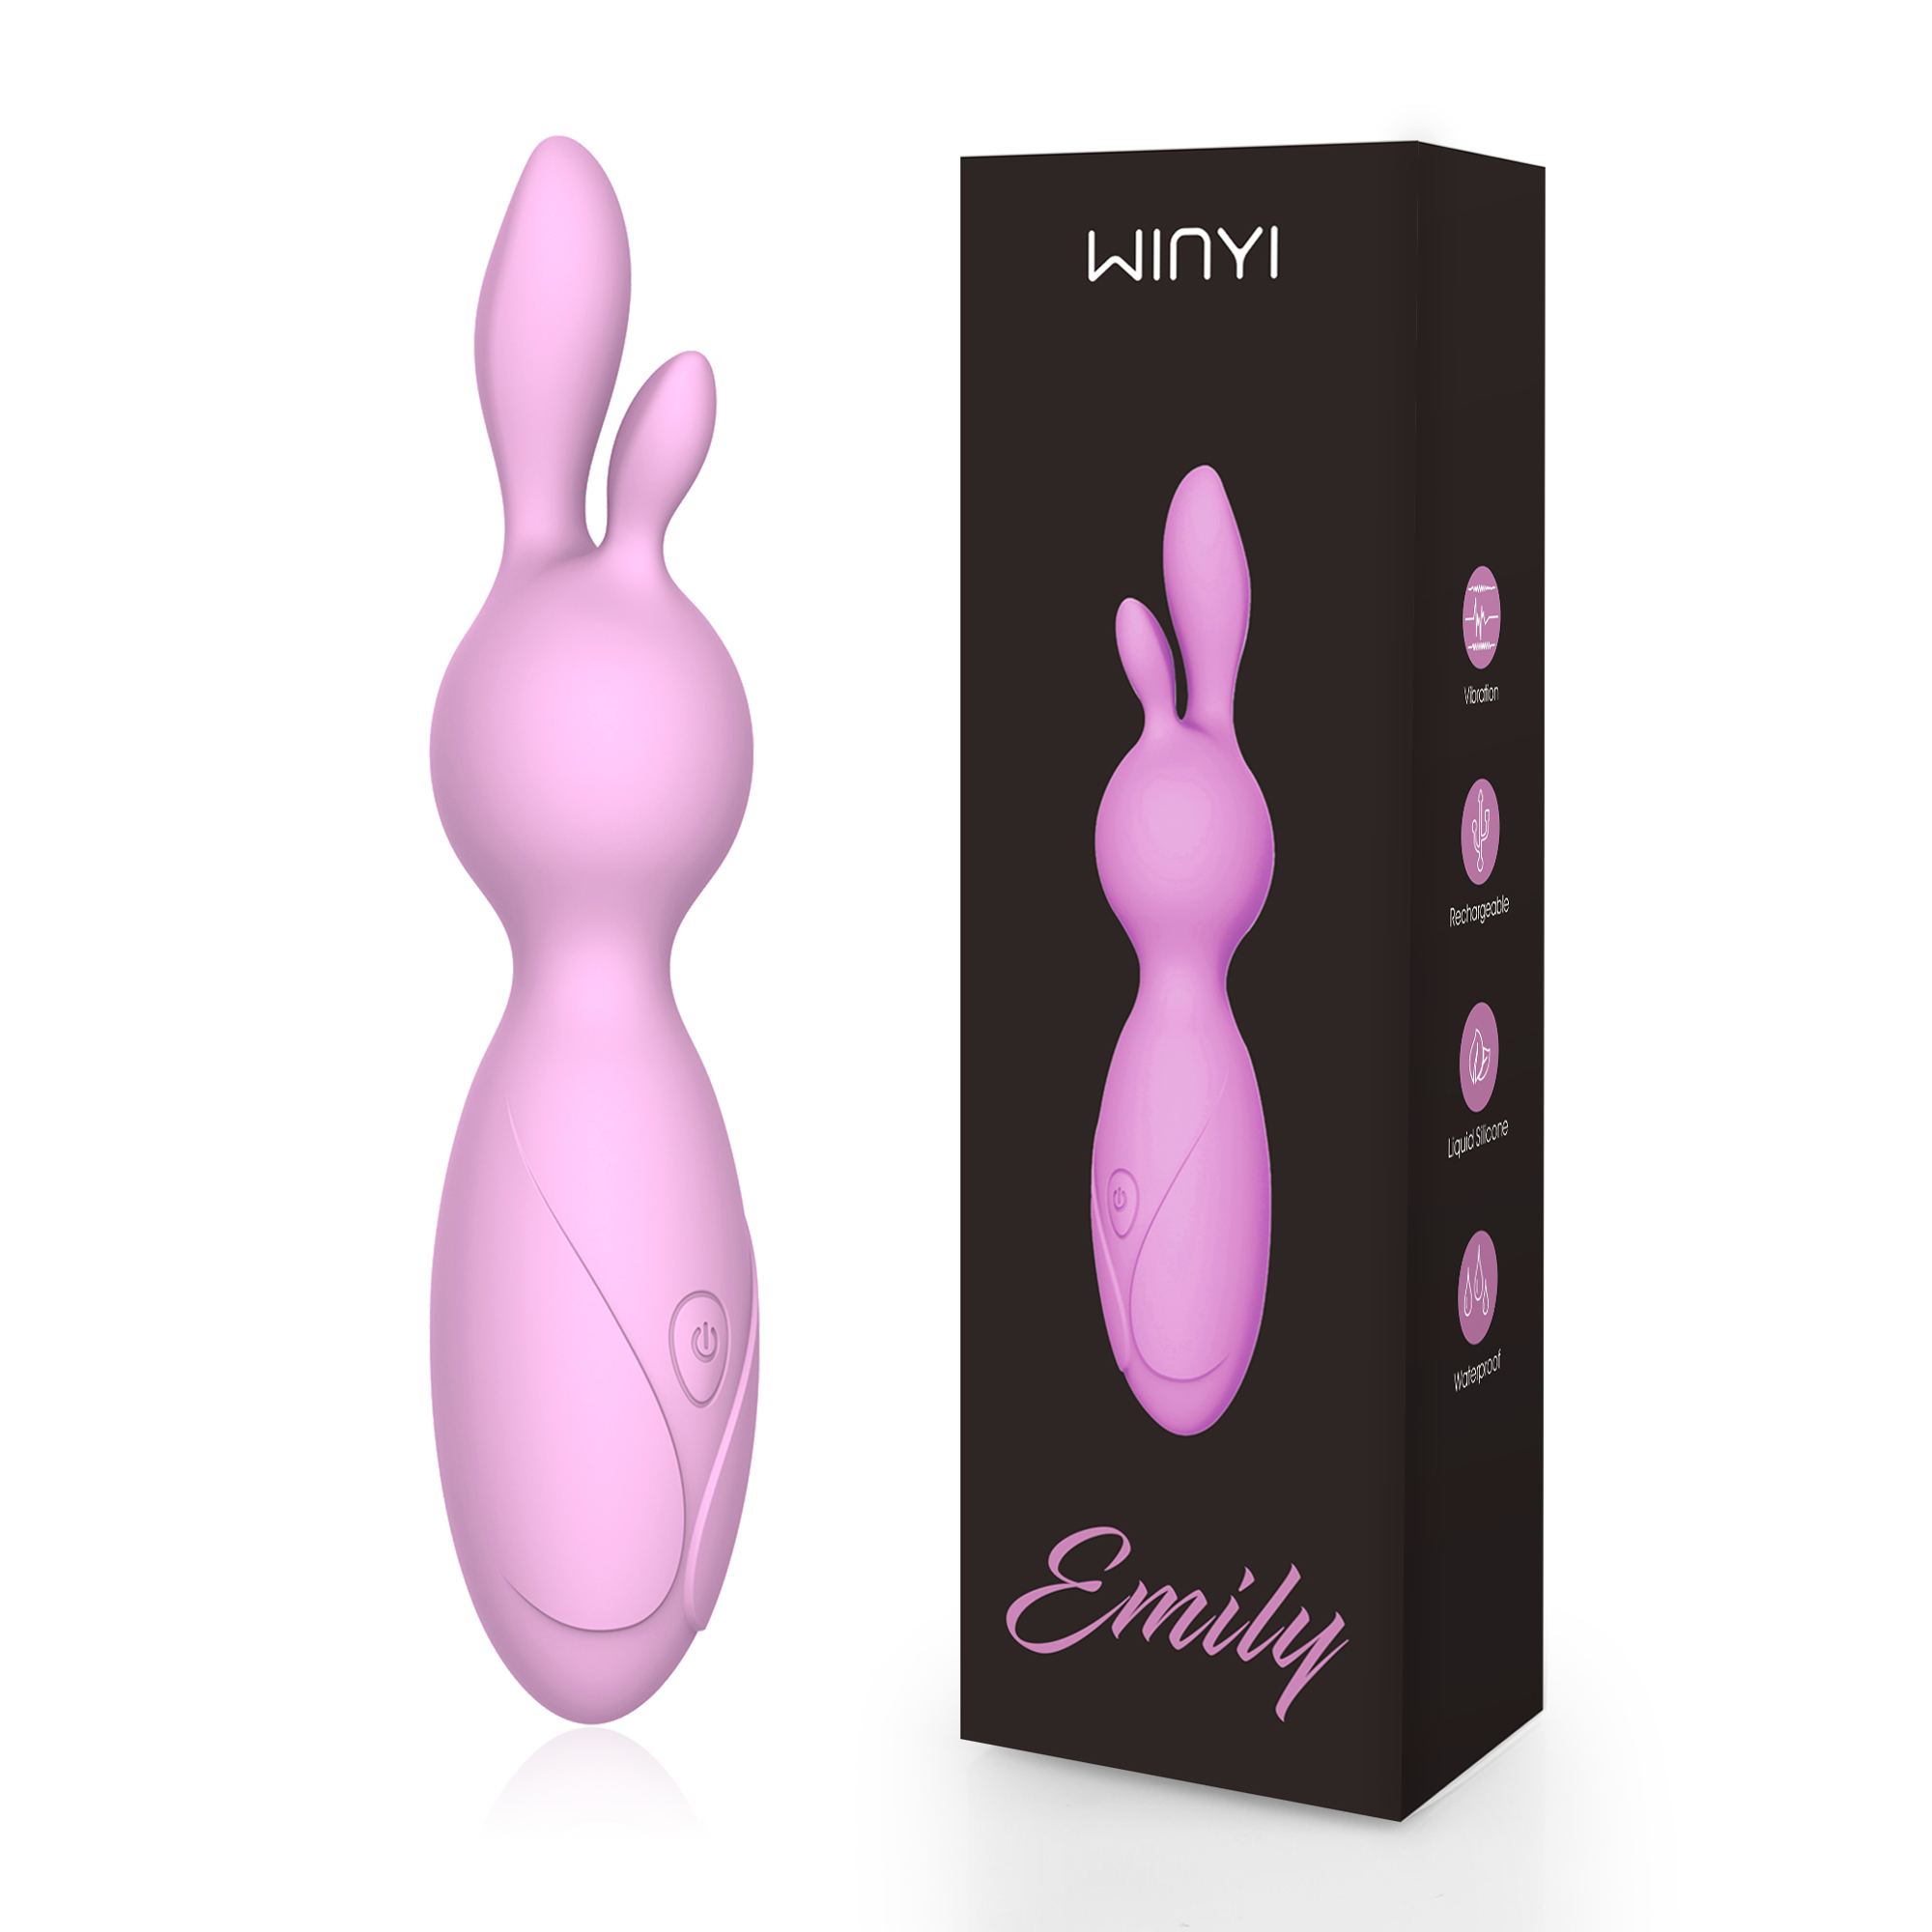 WY0520 EMILY-rabbit vibrator-szwinyi.com